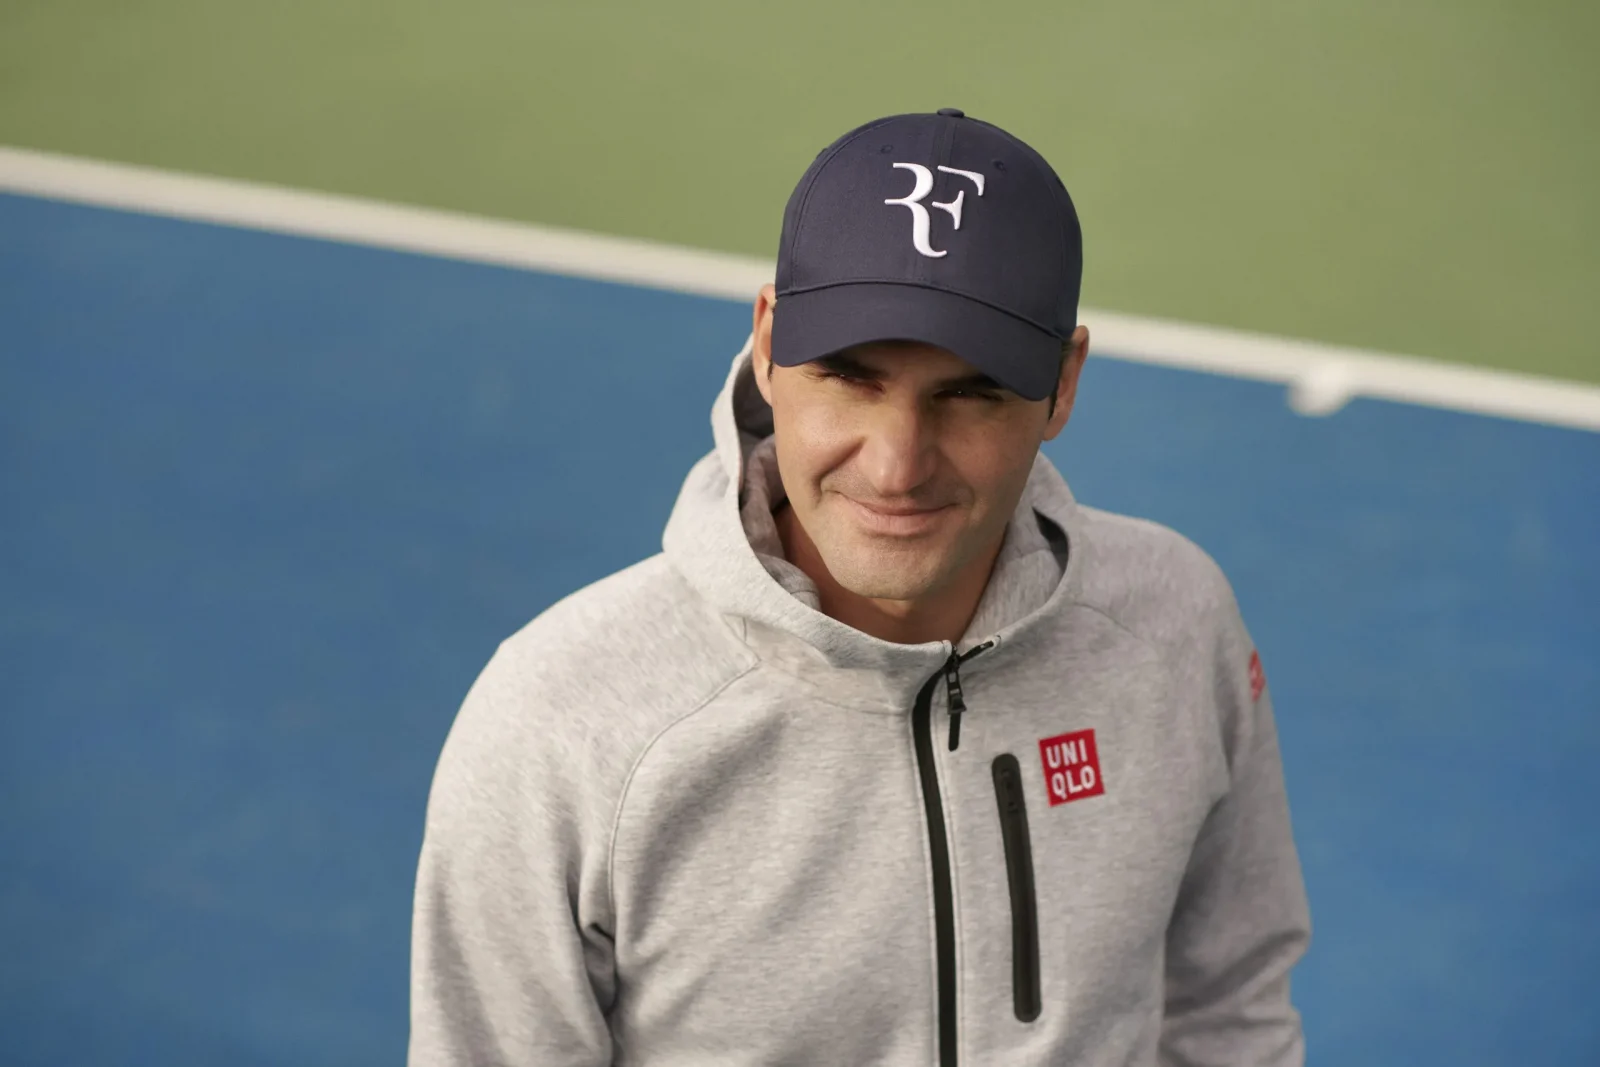 Federer wearing an "RF" logo hat